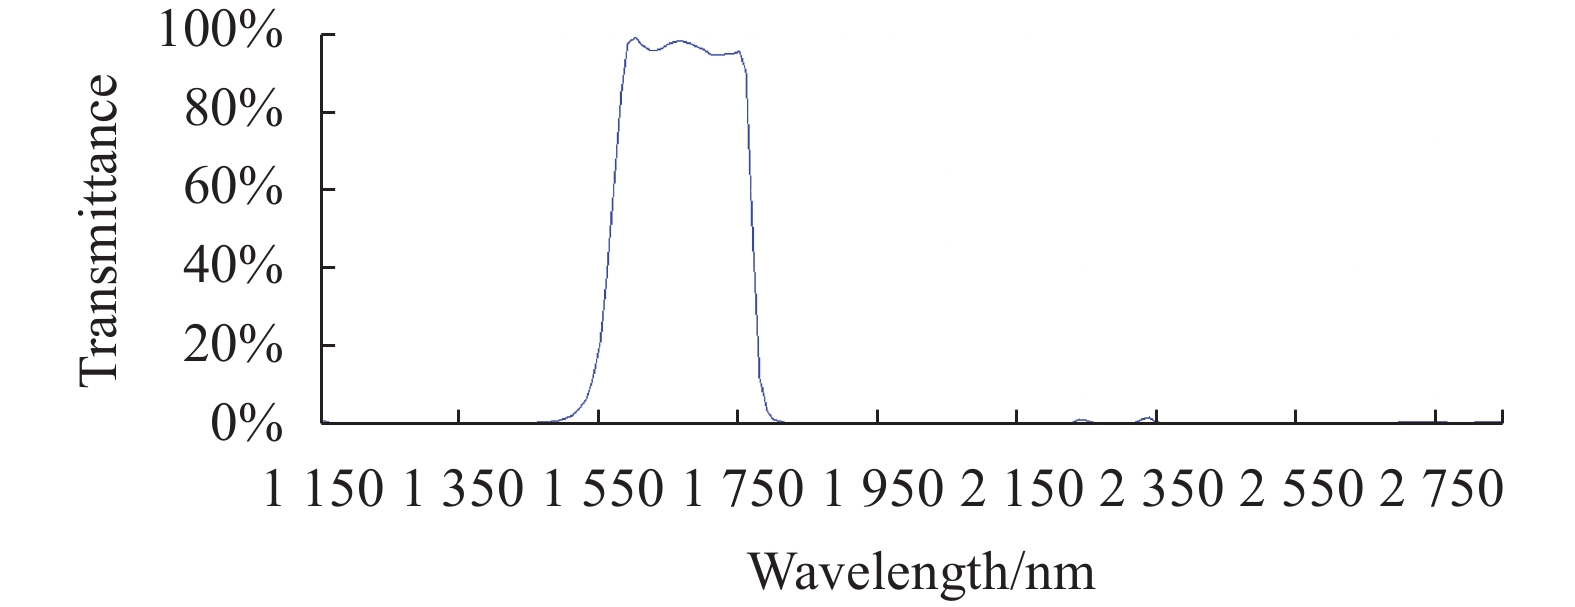 Transmission spectrum design curve of 1.55-1.75 μm narrowband filter